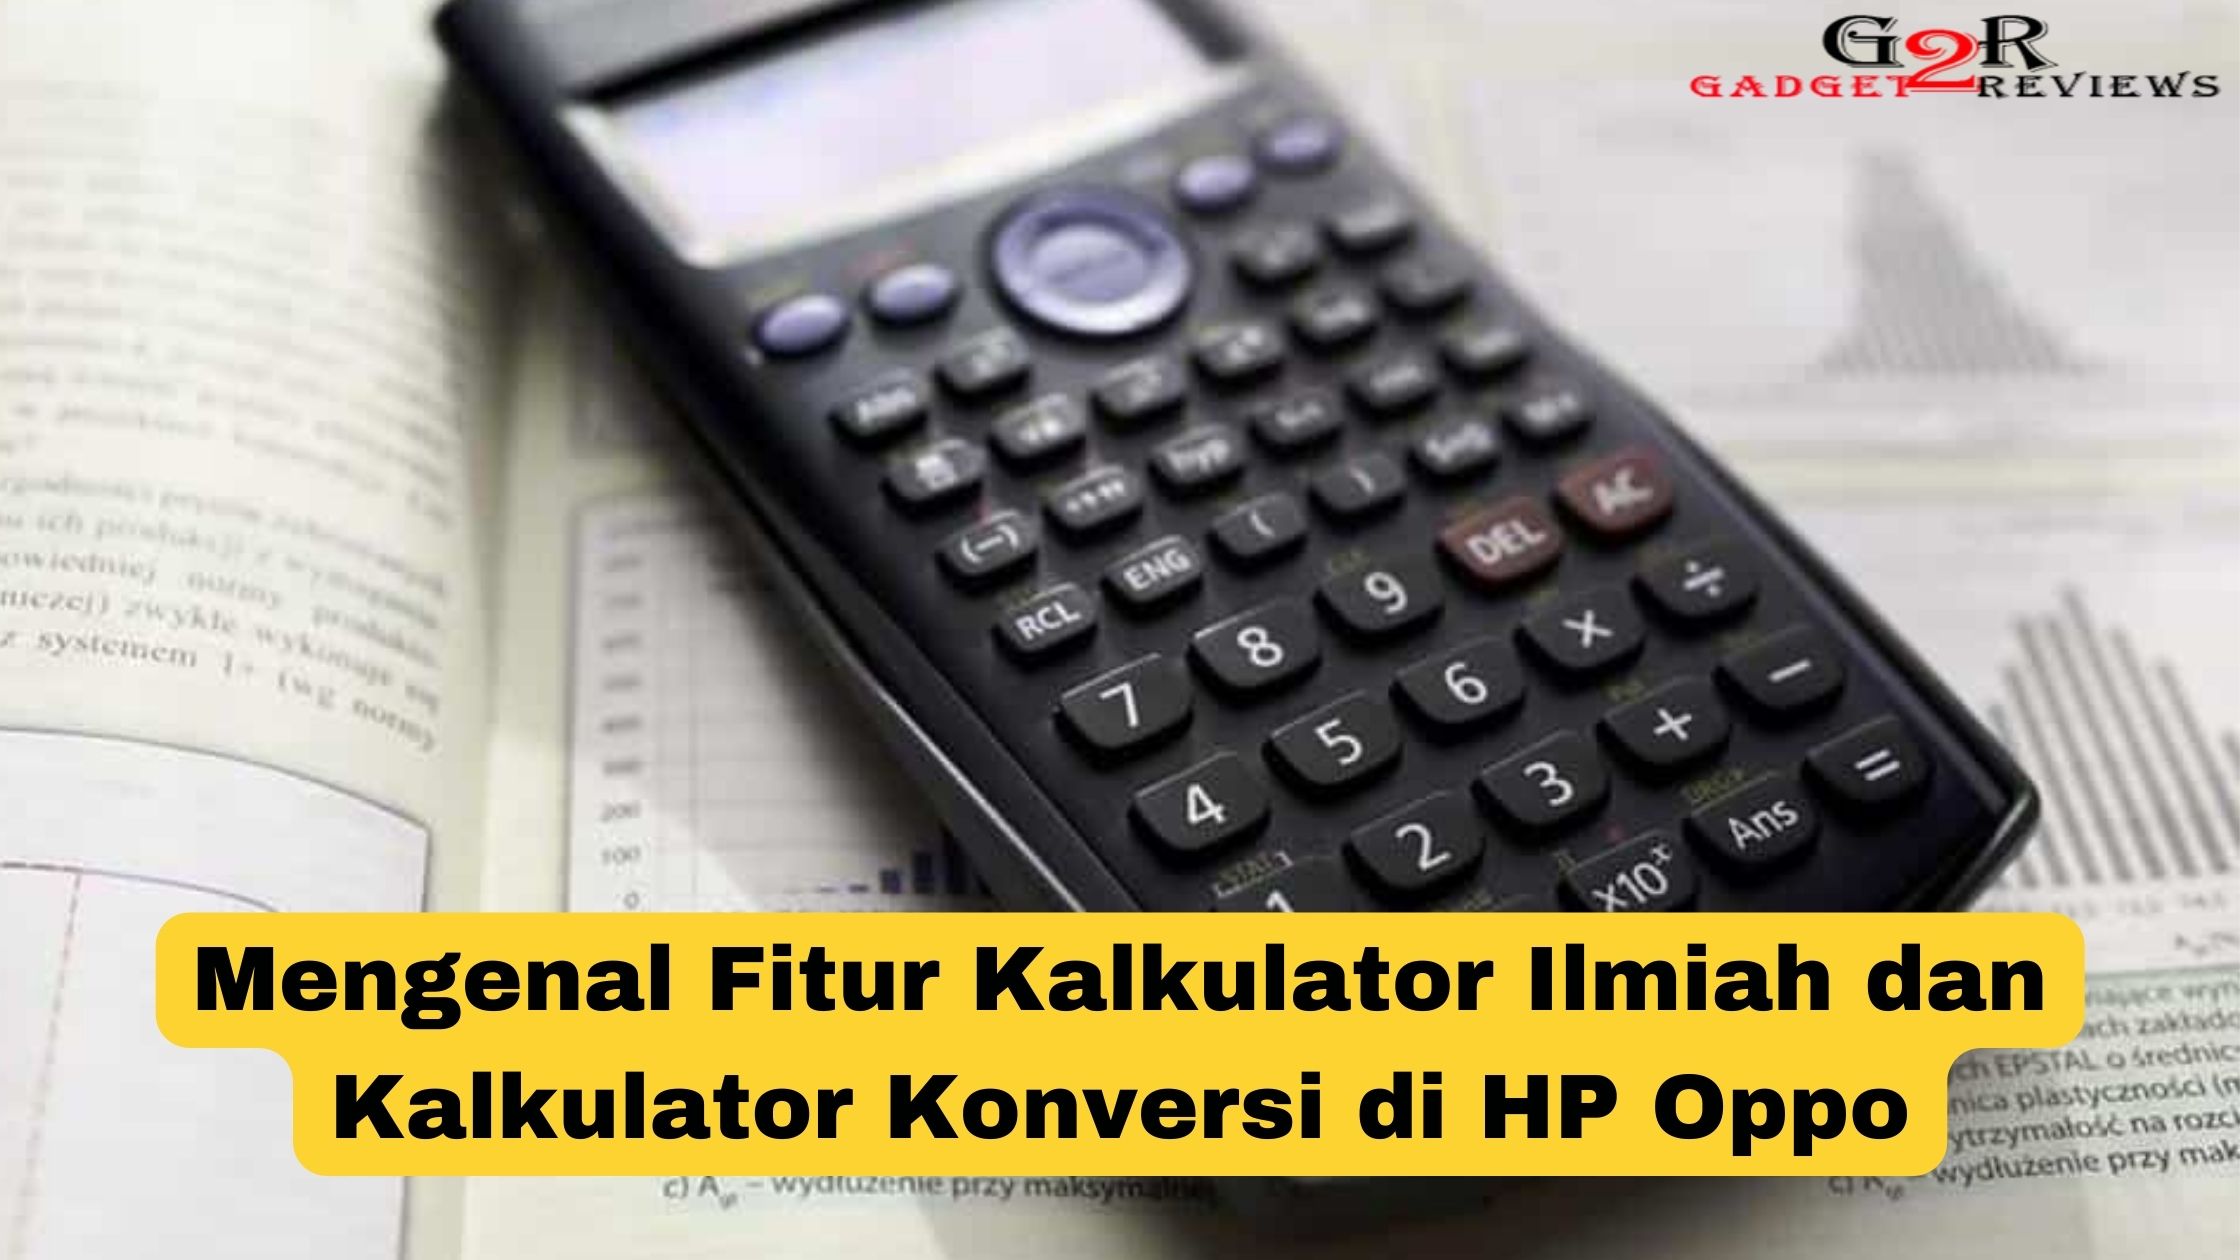 Pengaturan Kalkulator di HP Oppo  Mengenal Fitur Kalkulator Ilmiah dan Kalkulator Konversi Dengan Mudah dan Praktis